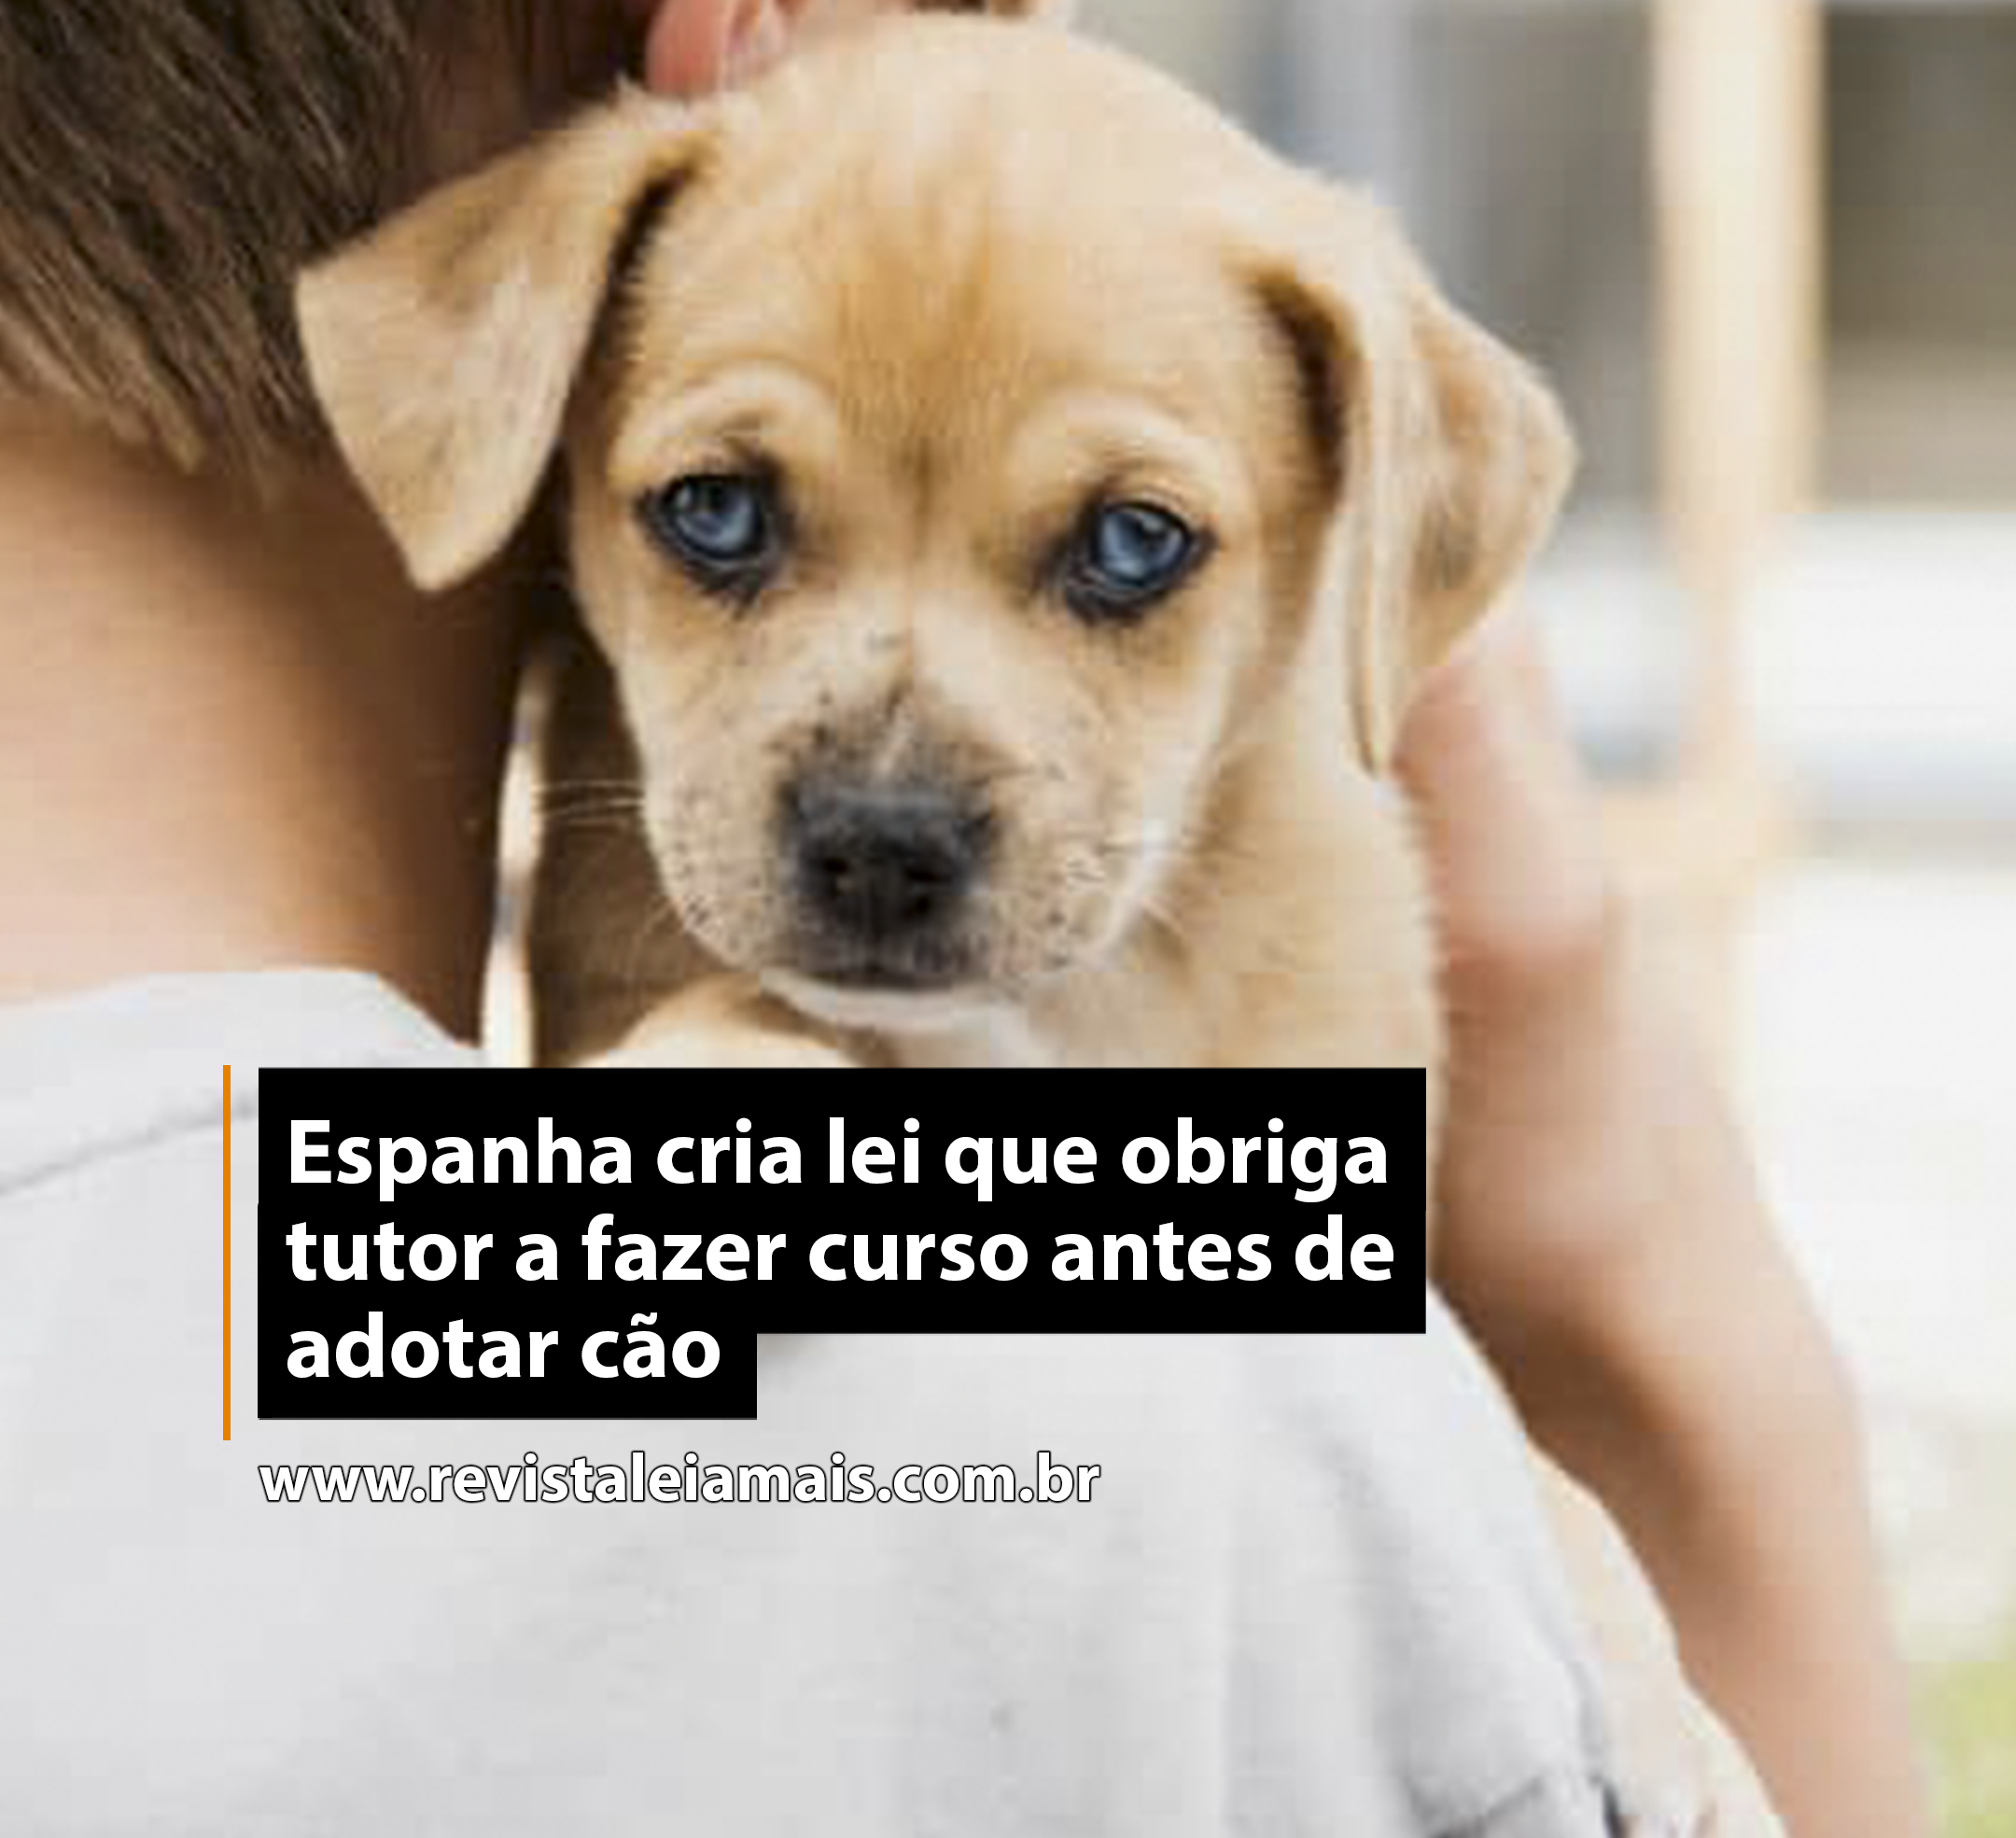 Espanha cria lei que obriga tutor a fazer curso antes de adotar cão